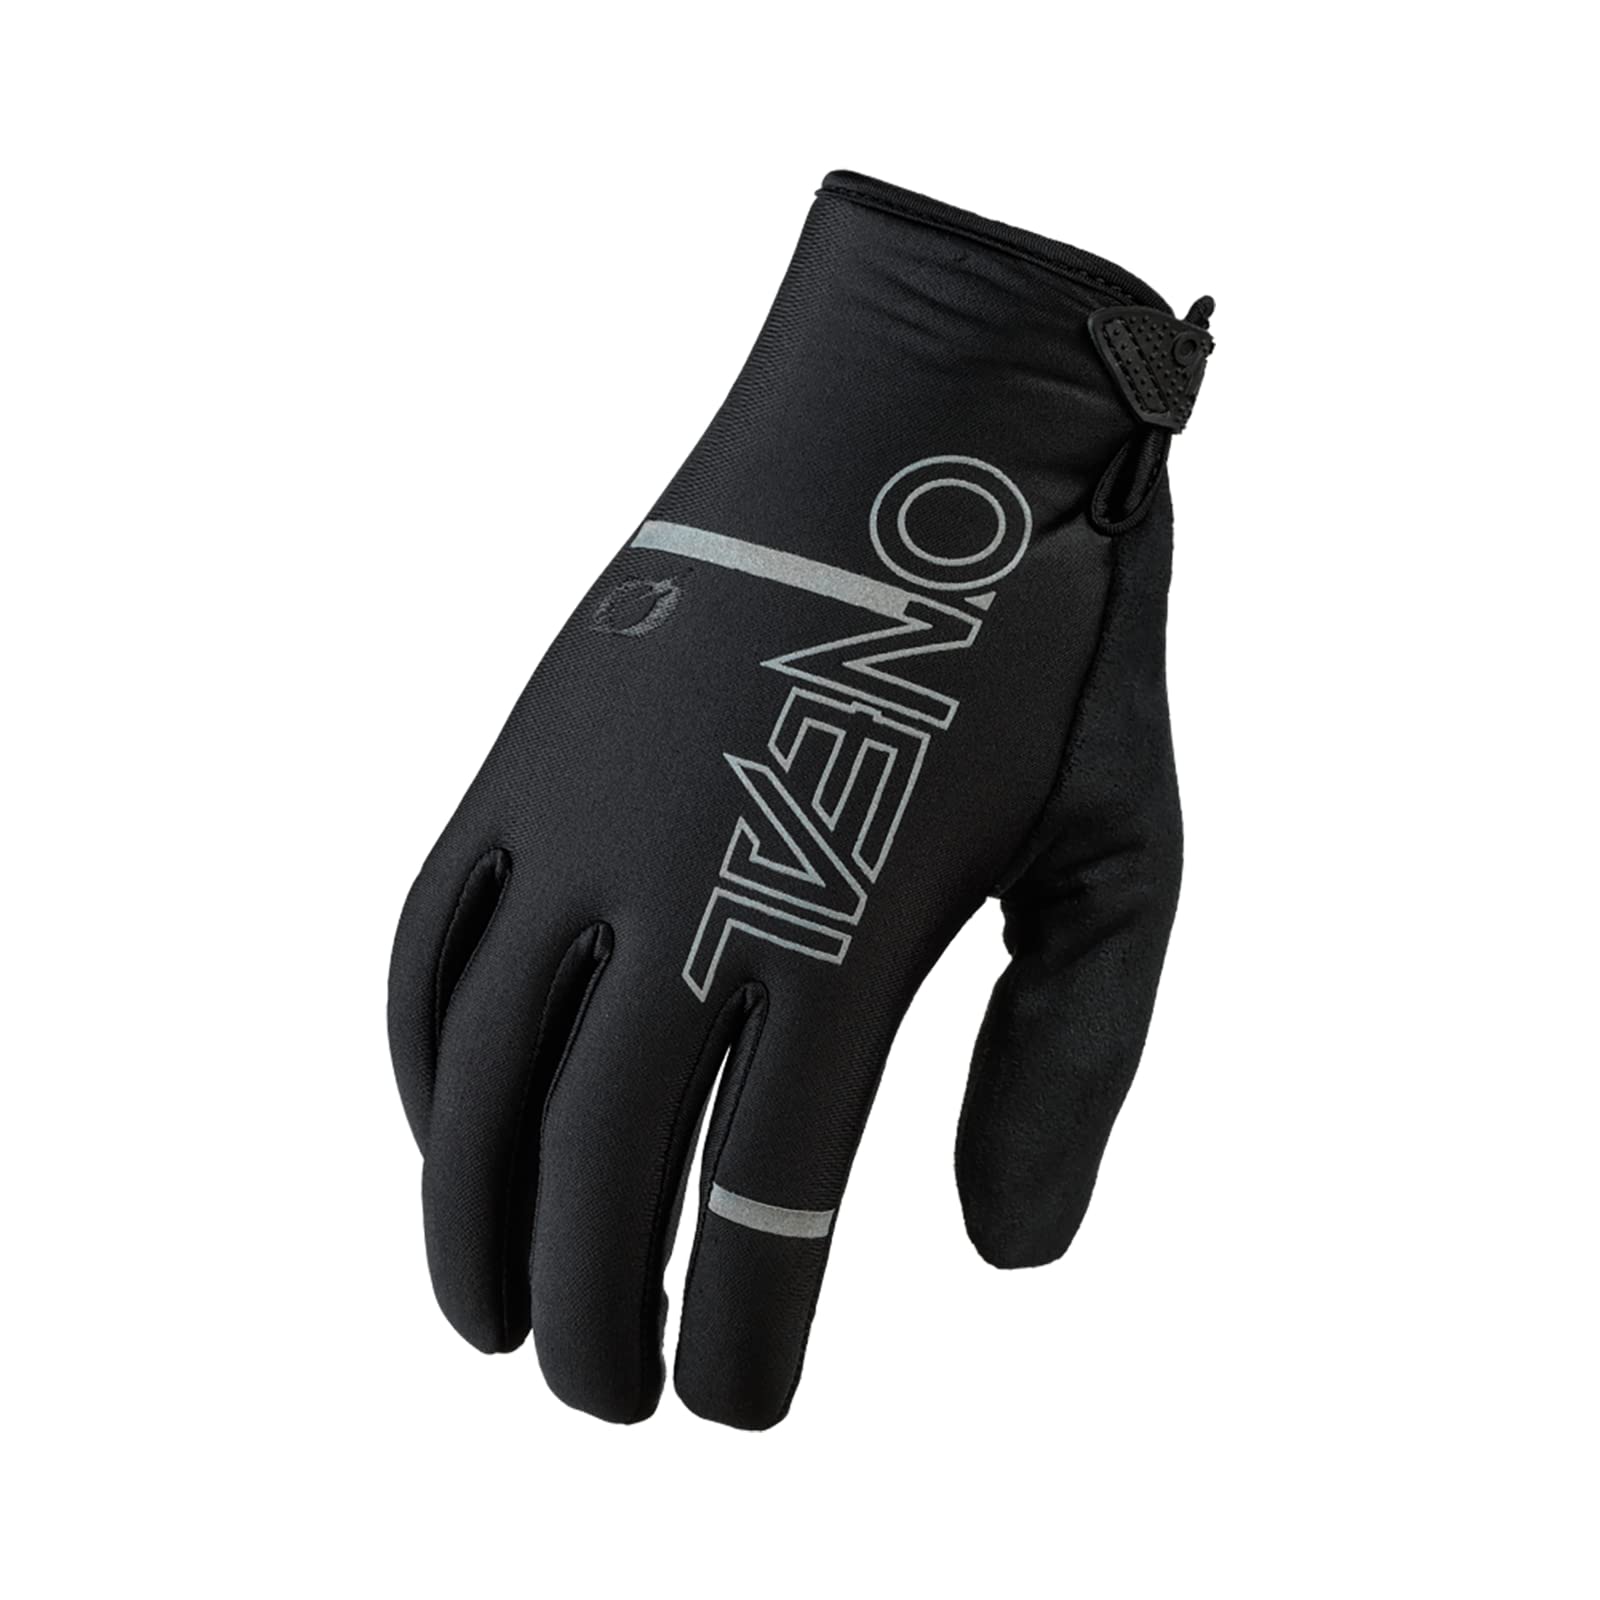 O'NEAL | Fahrrad- & Motocross-Handschuhe | MX MTB DH FR Downhill Freeride | Hoher Komfort, Atmungsaktiv, Mit Silikonprint für Grip bei Nässe | Winter Glove | Erwachsene | Schwarz | Größe XXL von O'NEAL